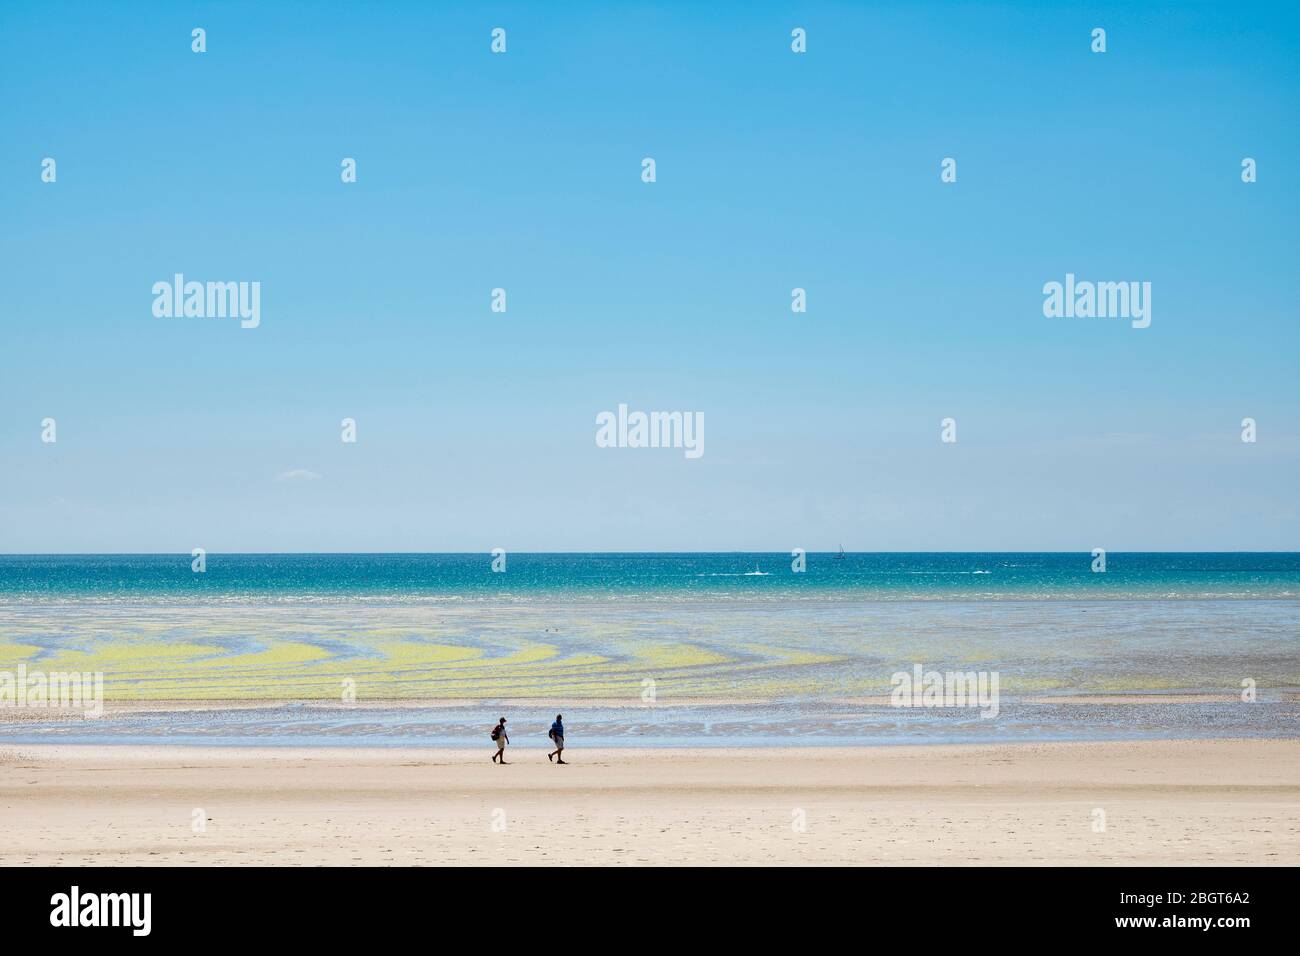 Camminatori e alghe che formano forme geometriche su una spiaggia sabbiosa con cielo ceruleo a St Aubin's Bay, Jersey, Isole del canale Foto Stock